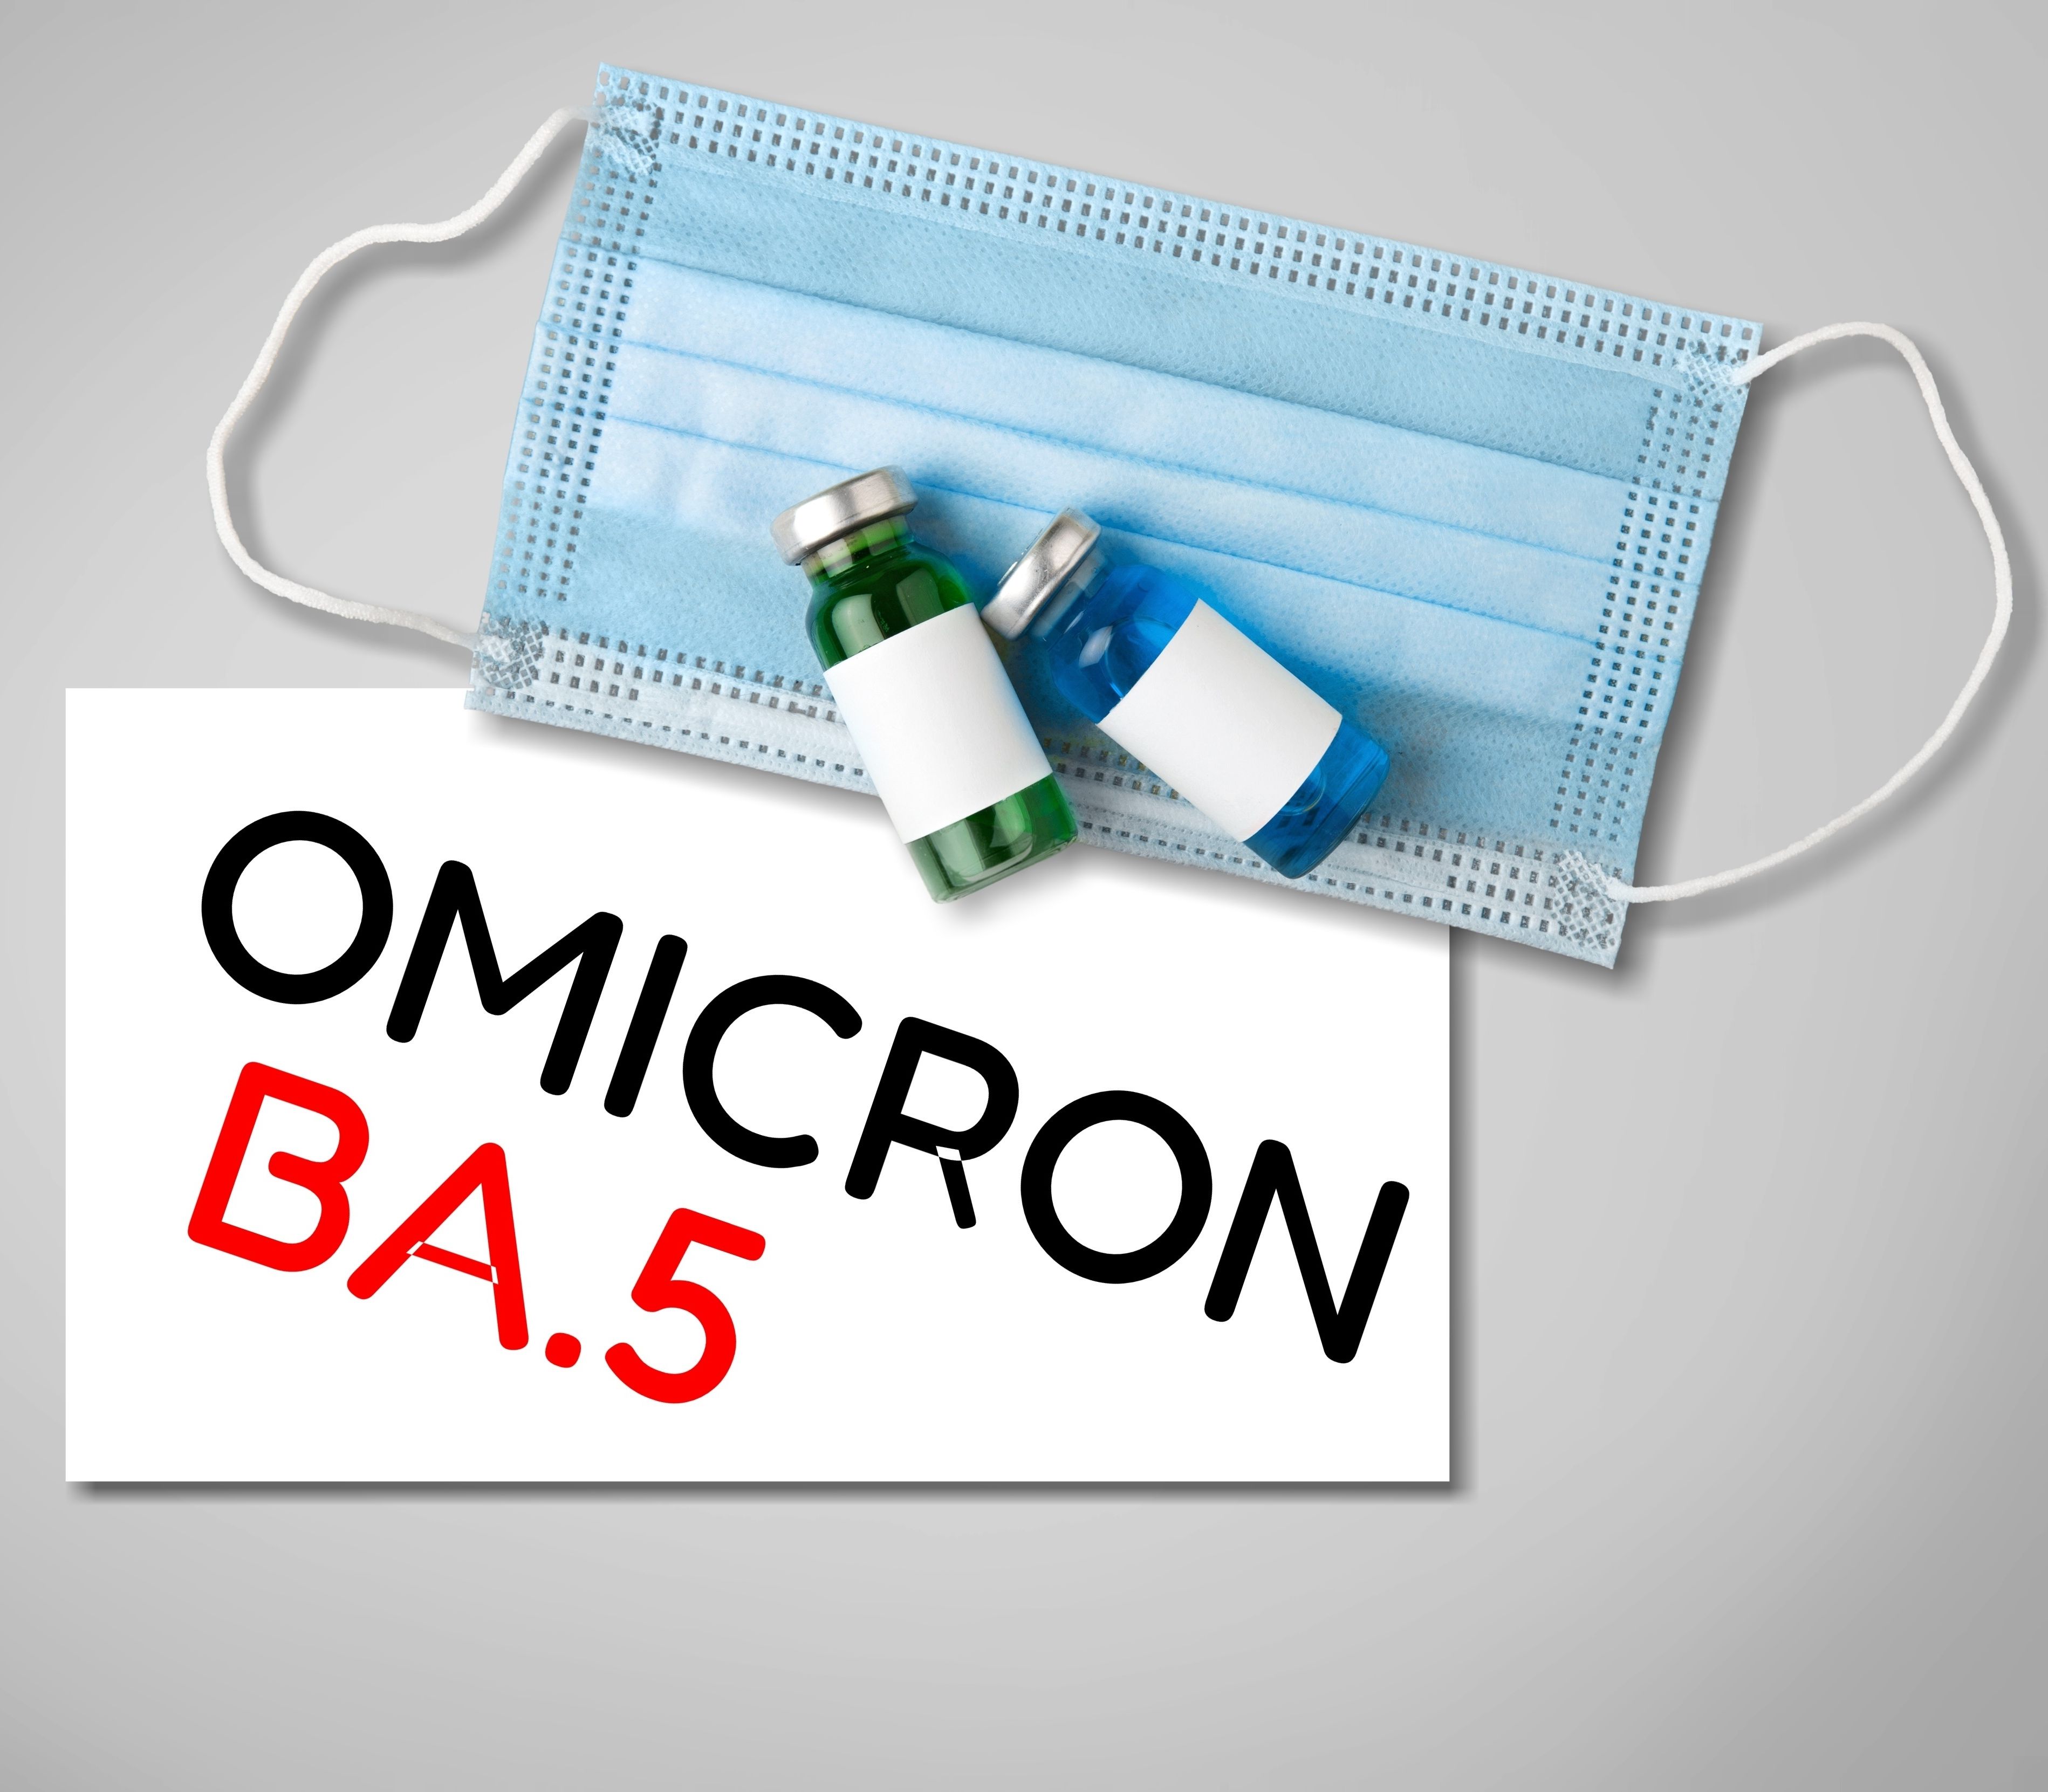 Efficacité d’une infection antérieure par Omicron et d’une vaccination de rappel contre la sous-variante BA.5